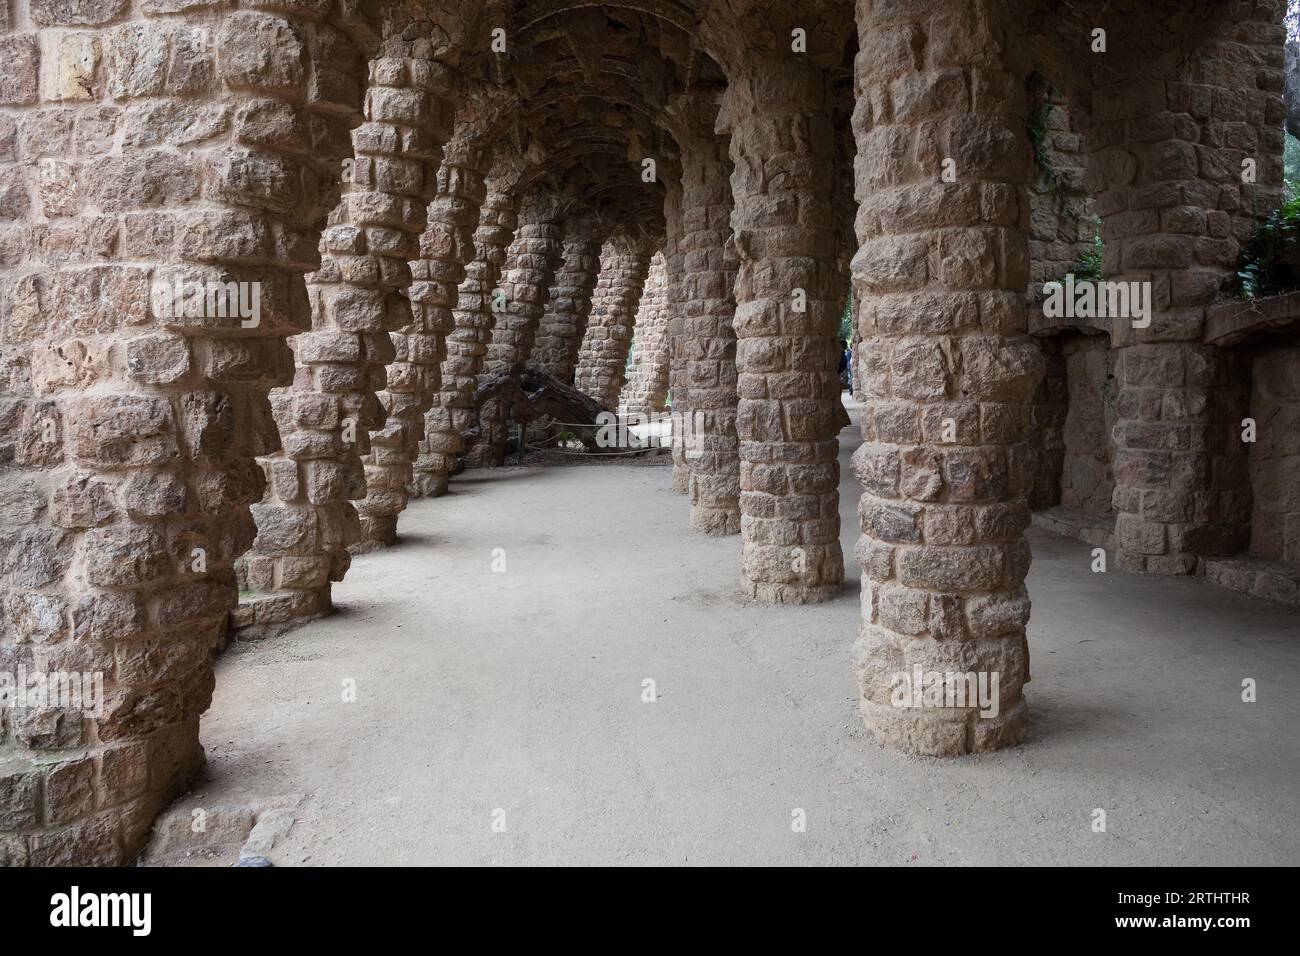 Spagna, Barcellona, Parco Guell, passaggio colonnato con colonne angolate del Passeig de les Palmeres (parte pubblica al di fuori della zona monumentale) Foto Stock